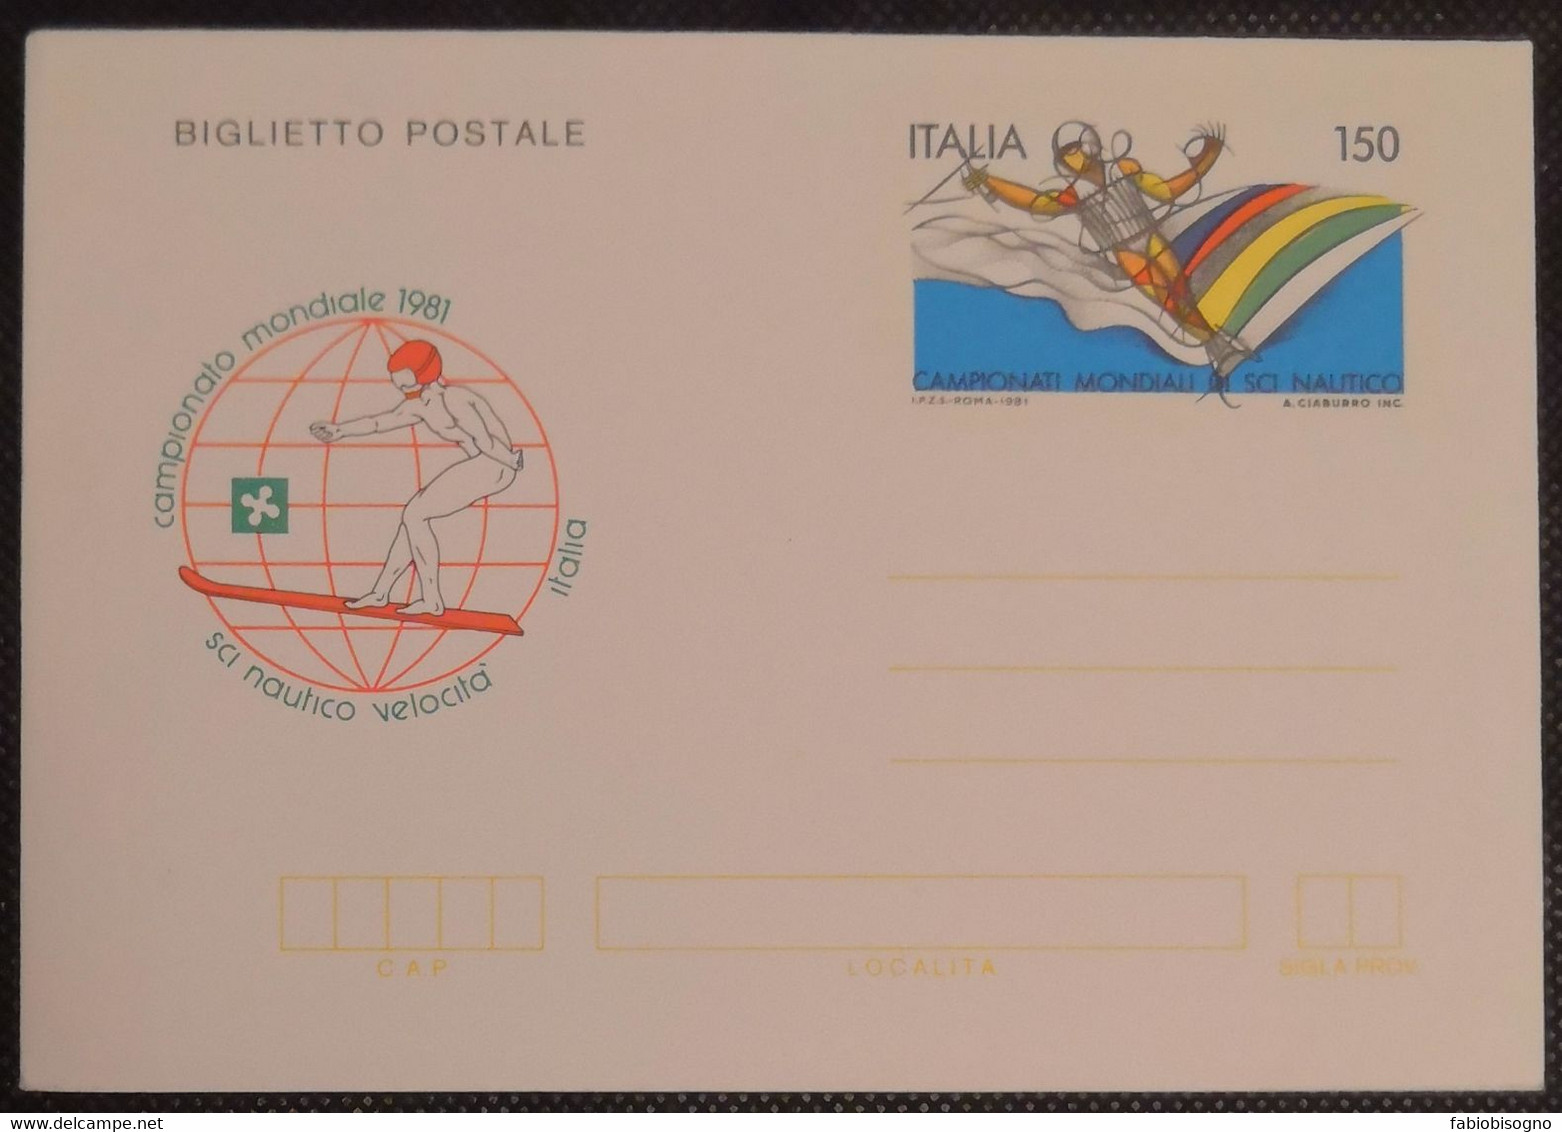 1981 Italia L.150 - Campionato Mondiale Sci Nautico Velocità - Postal Cover - Wasserski